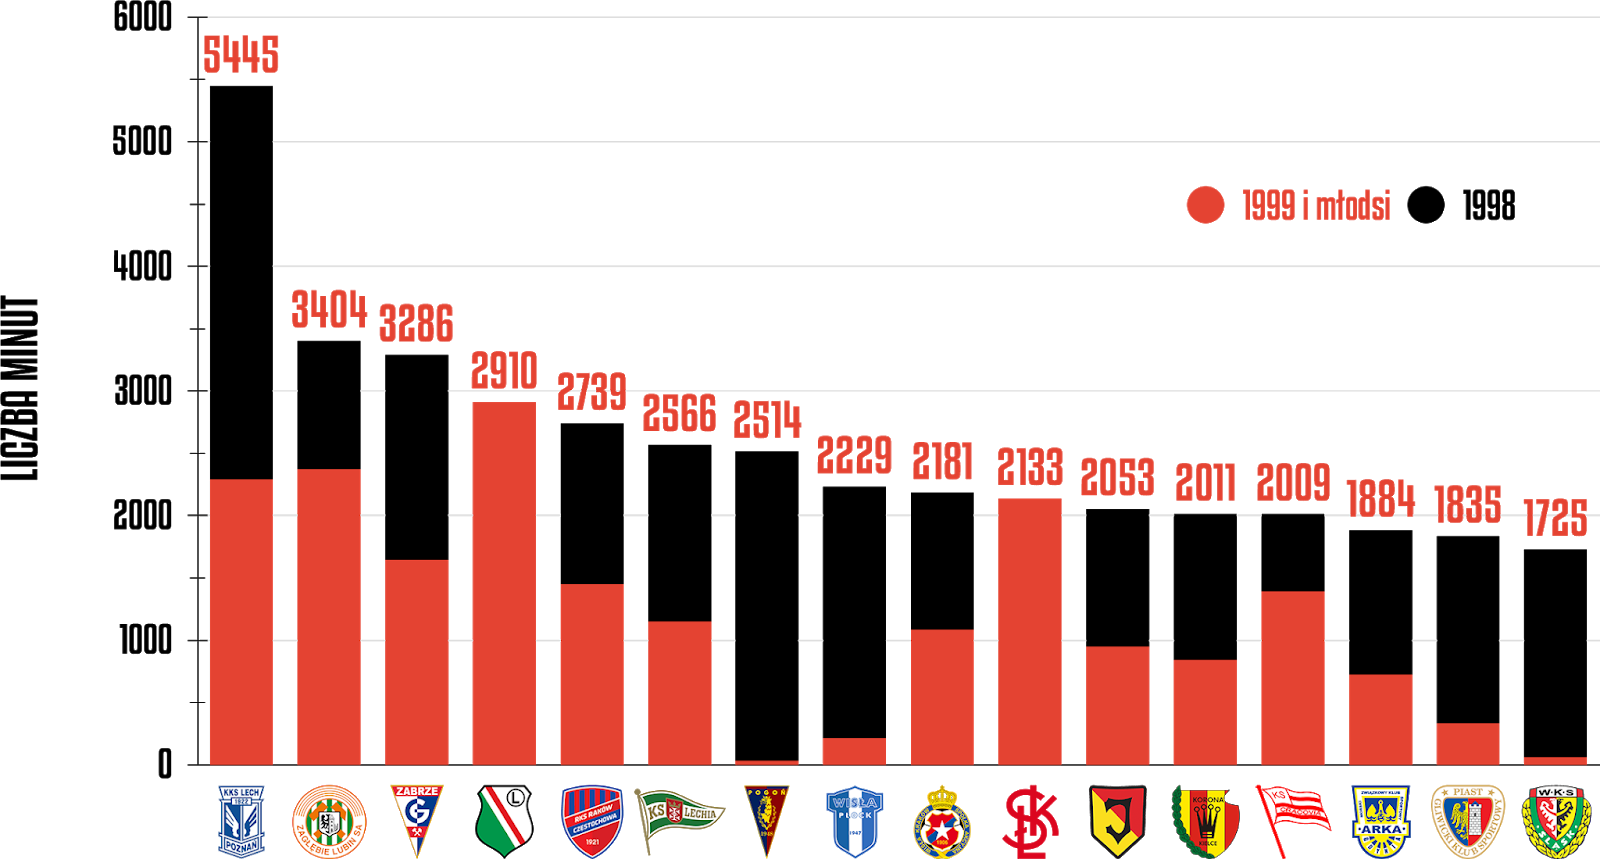 Klasyfikacja klubów pod względem rozegranych minut przez młodzieżowców po 19 kolejkach PKO Ekstraklasy<br><br>Źródło: Opracowanie własne na podstawie ekstrastats.pl<br><br>graf. Bartosz Urban